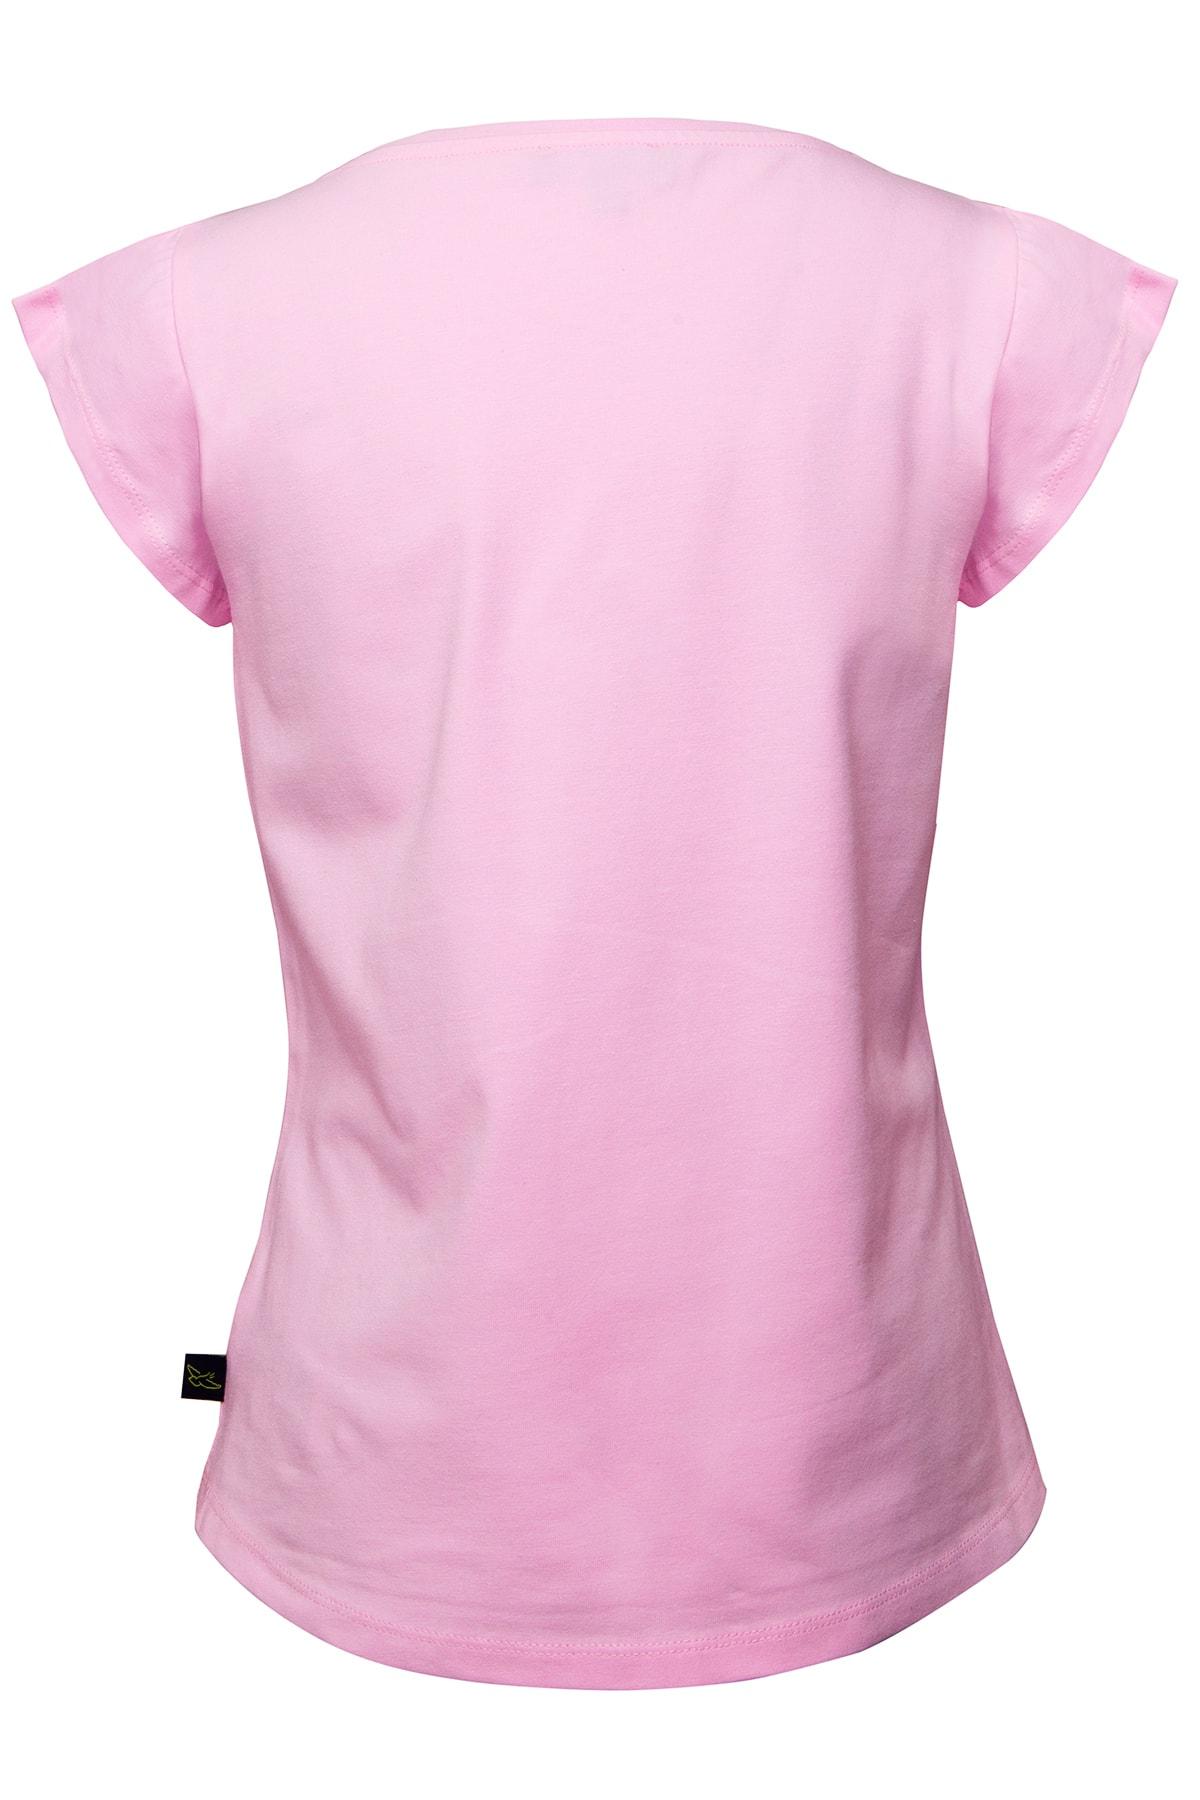 تی شرت دخترانه طرح پروانه کد.1015